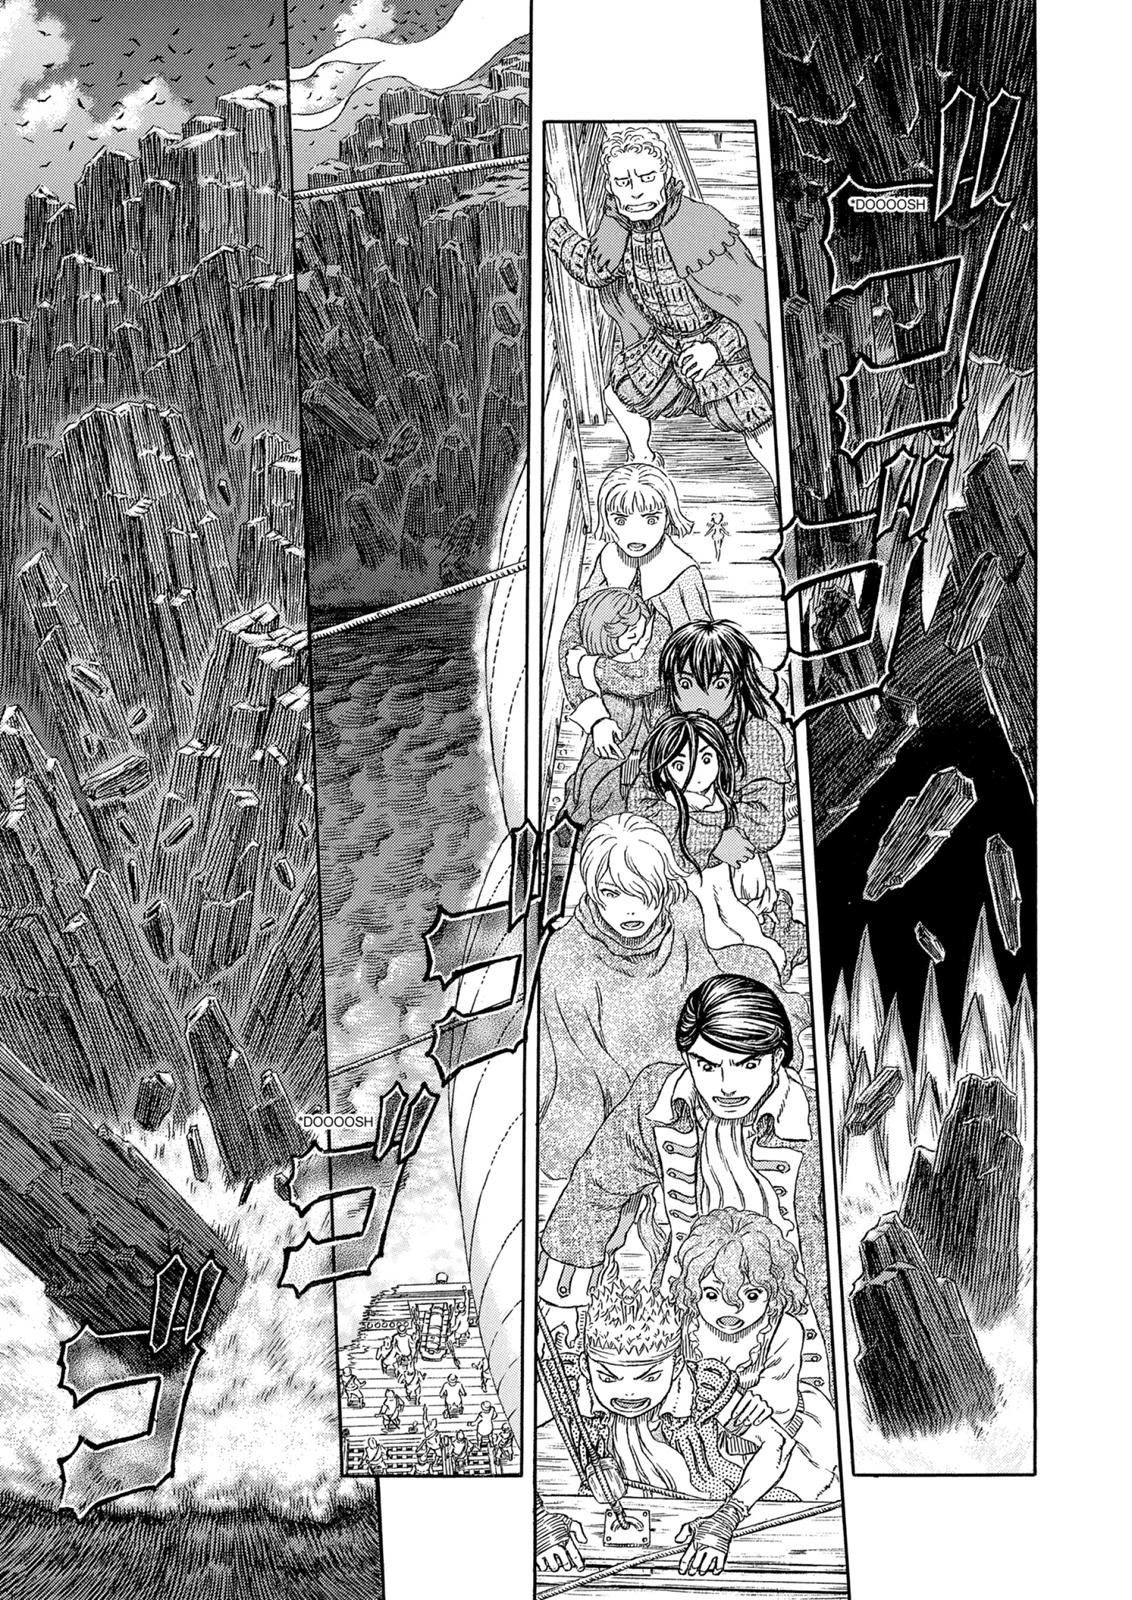 Berserk Manga Chapter 322 image 18